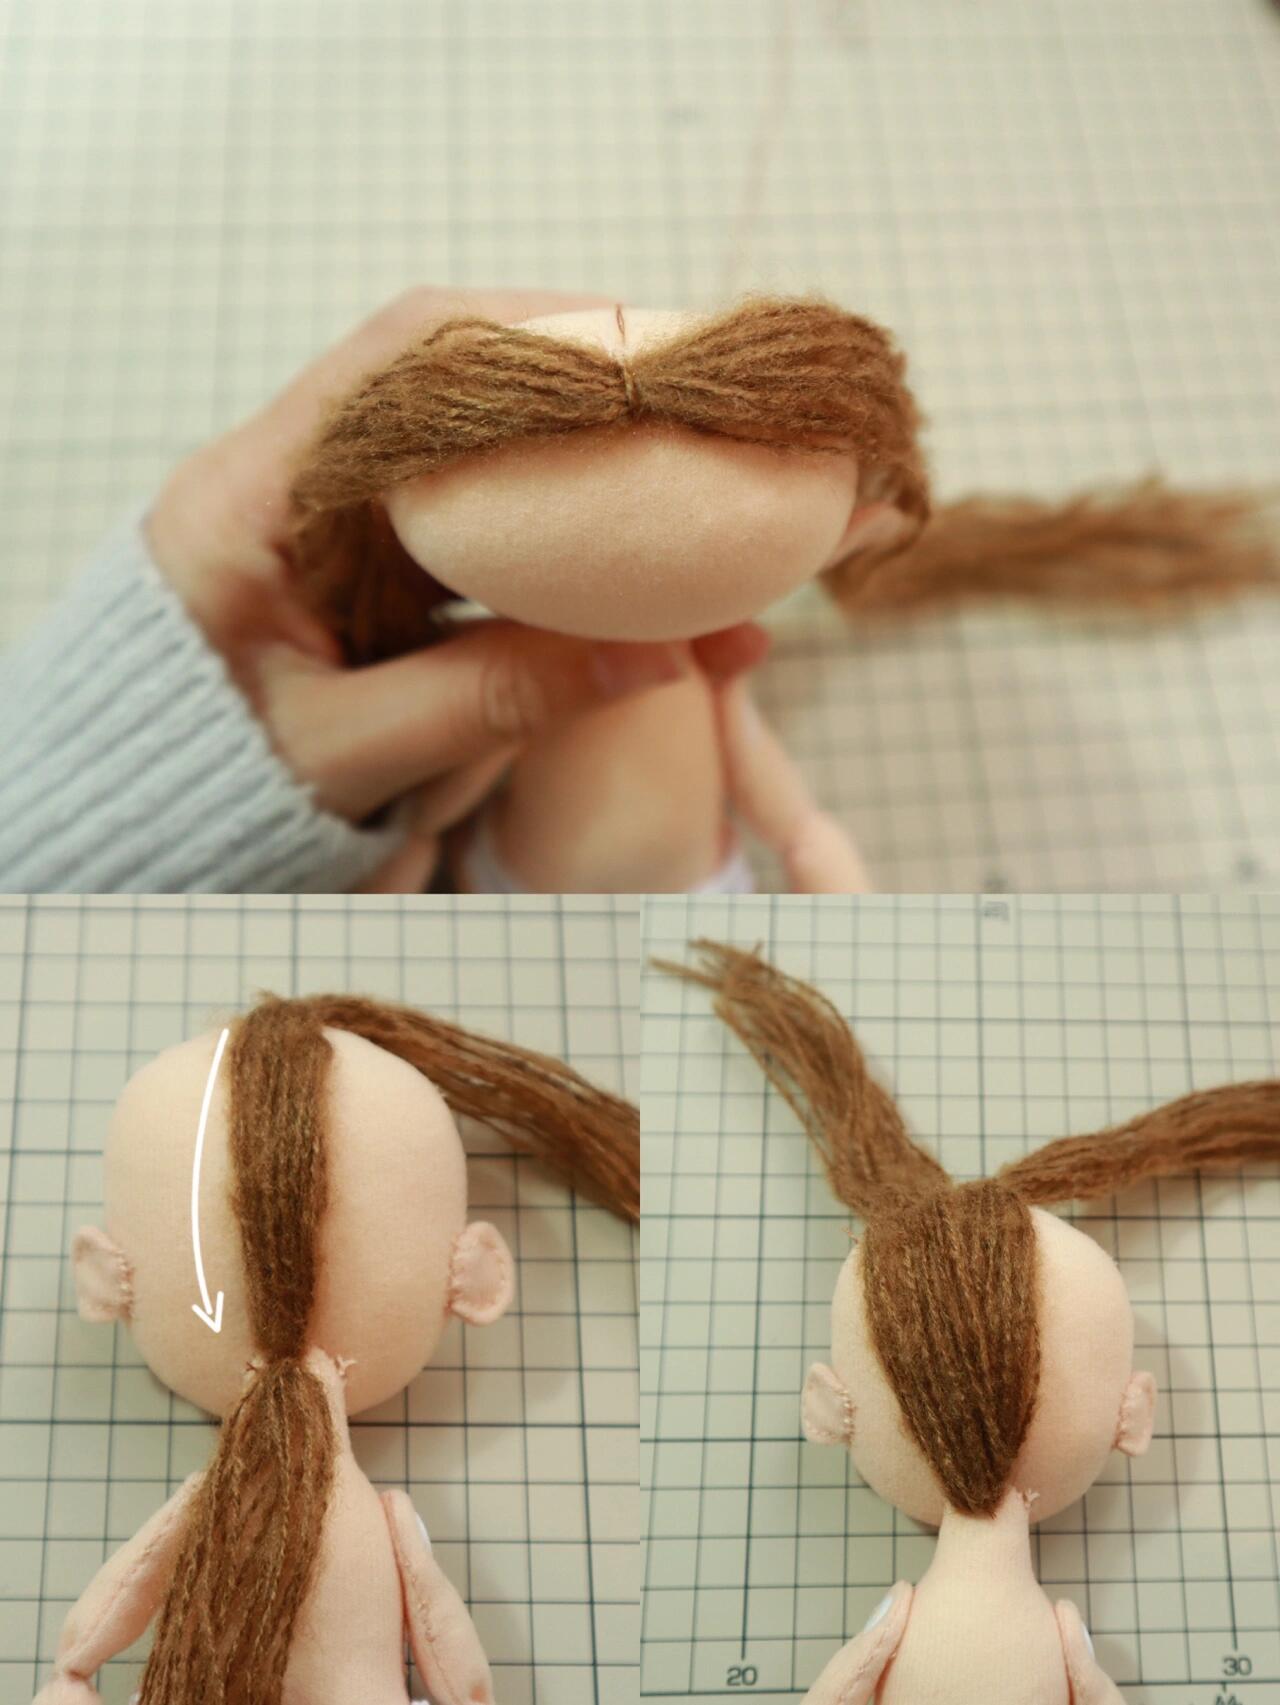 这里给大家分享一个毛线双辫子头发的做法 材料:马海毛毛线若干 娃娃